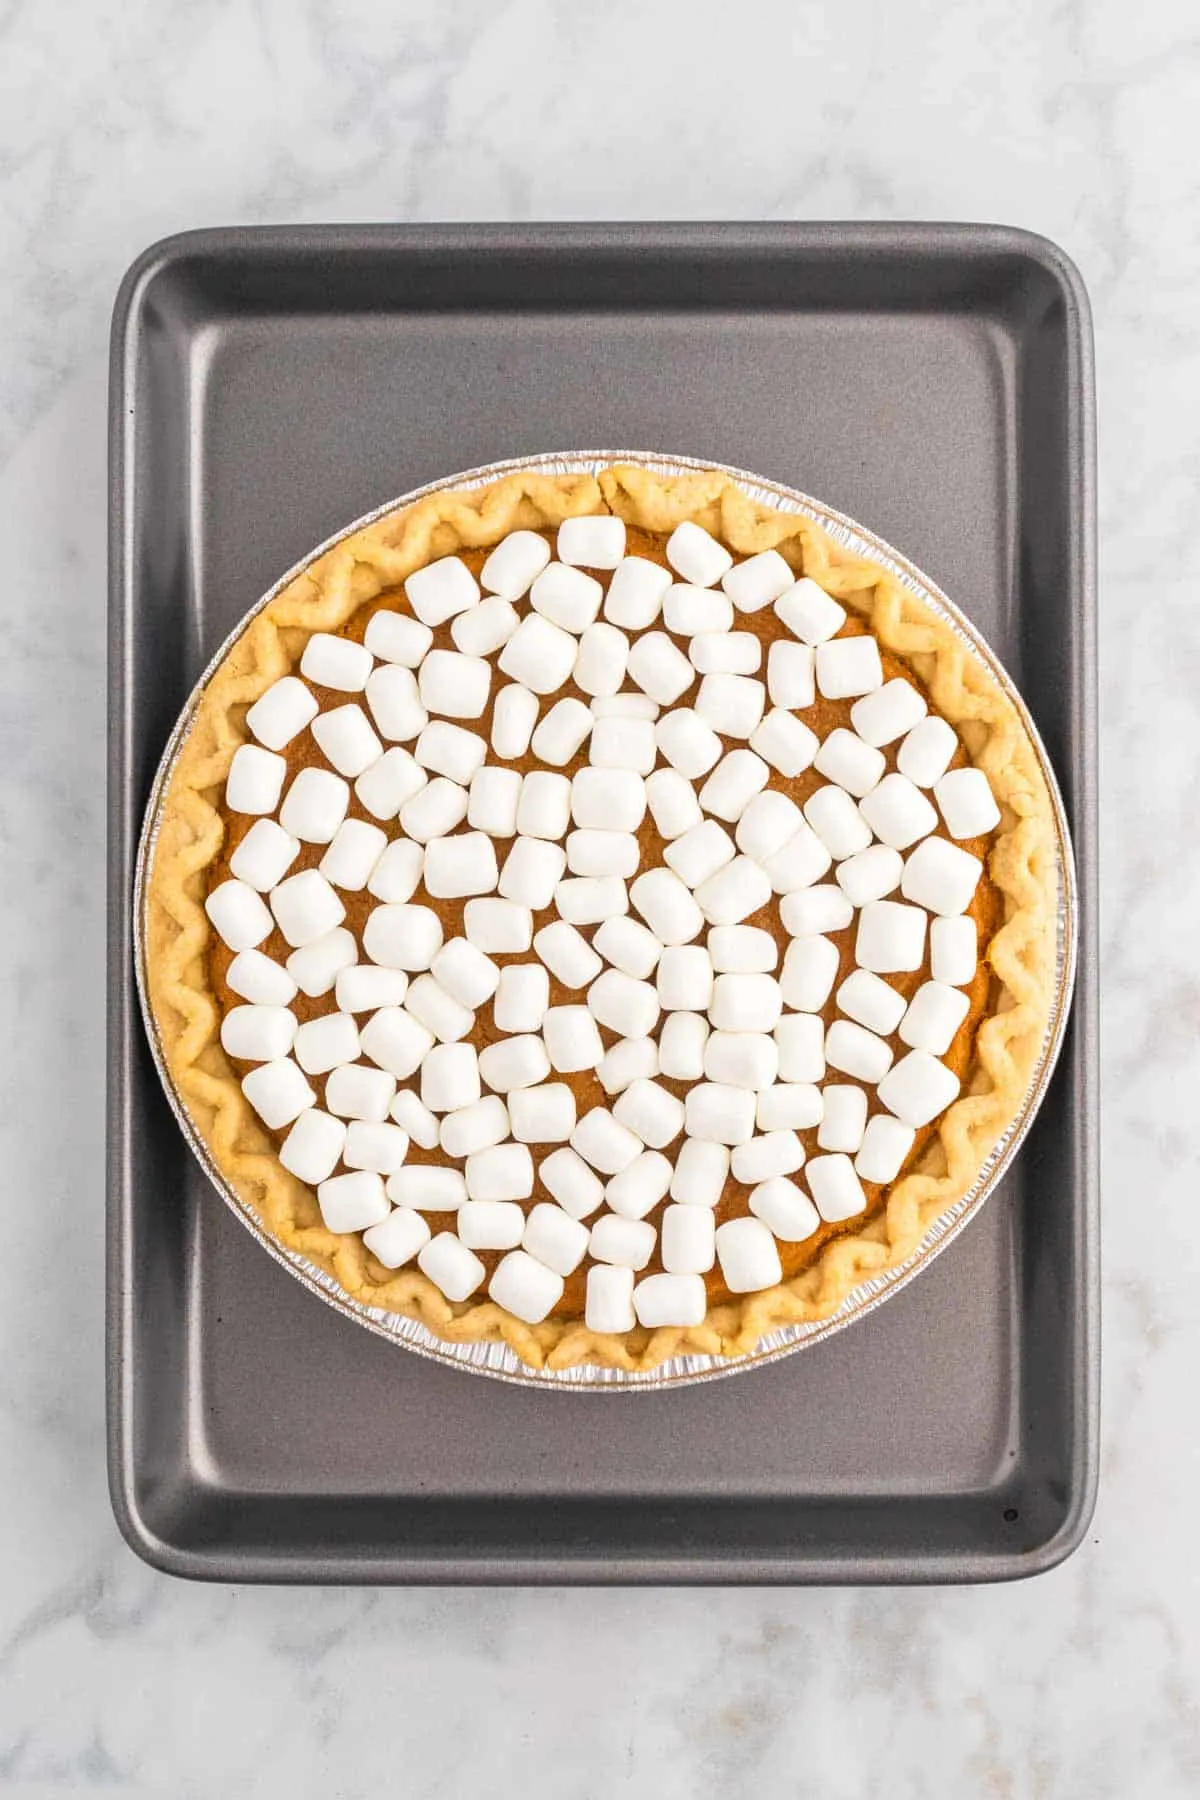 mini marshmallows on top of a sweet potato pie